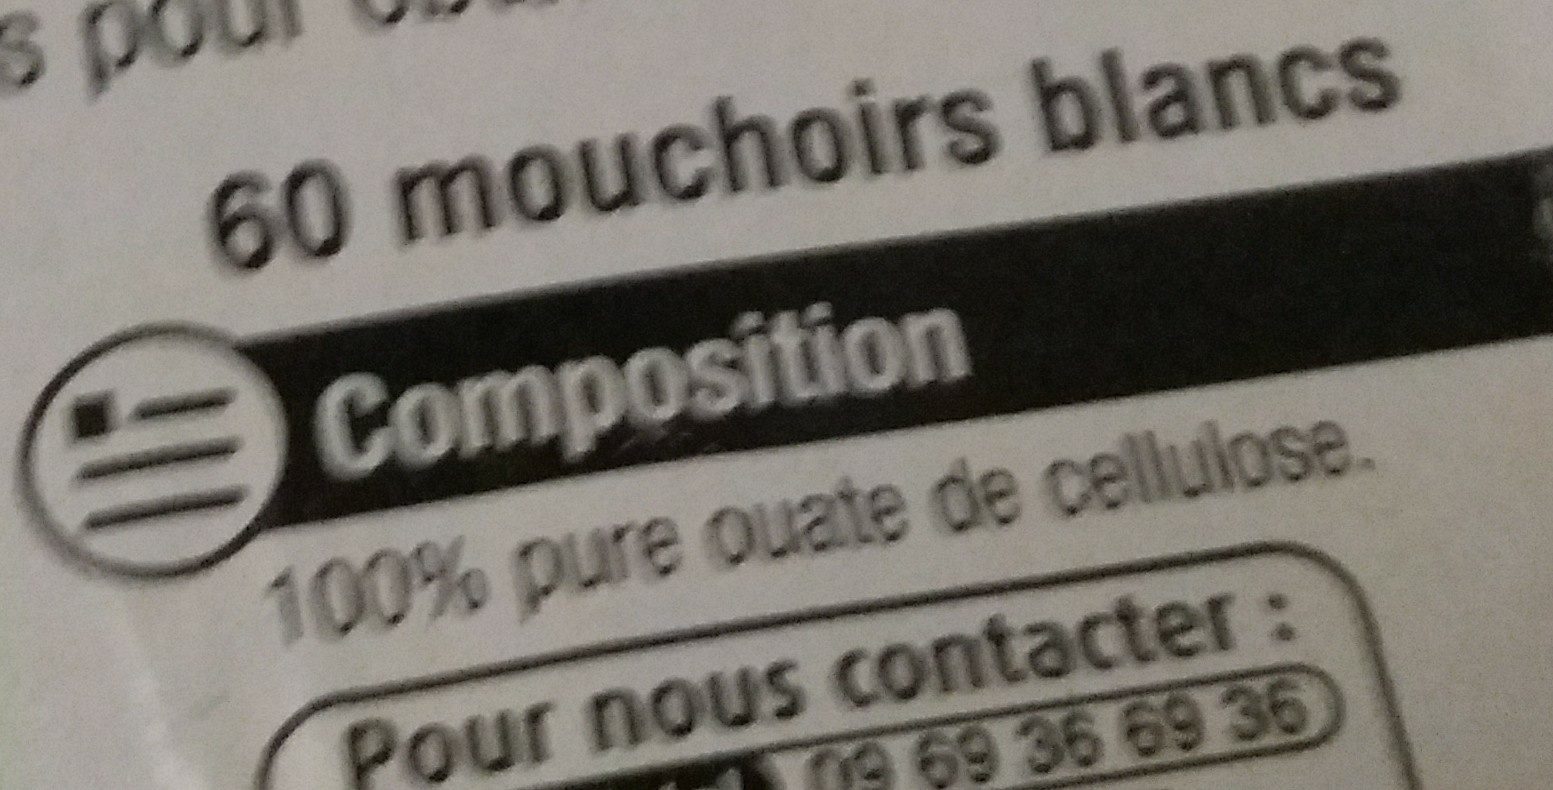 Mouchoir En Boite X80 - Ingredients - fr